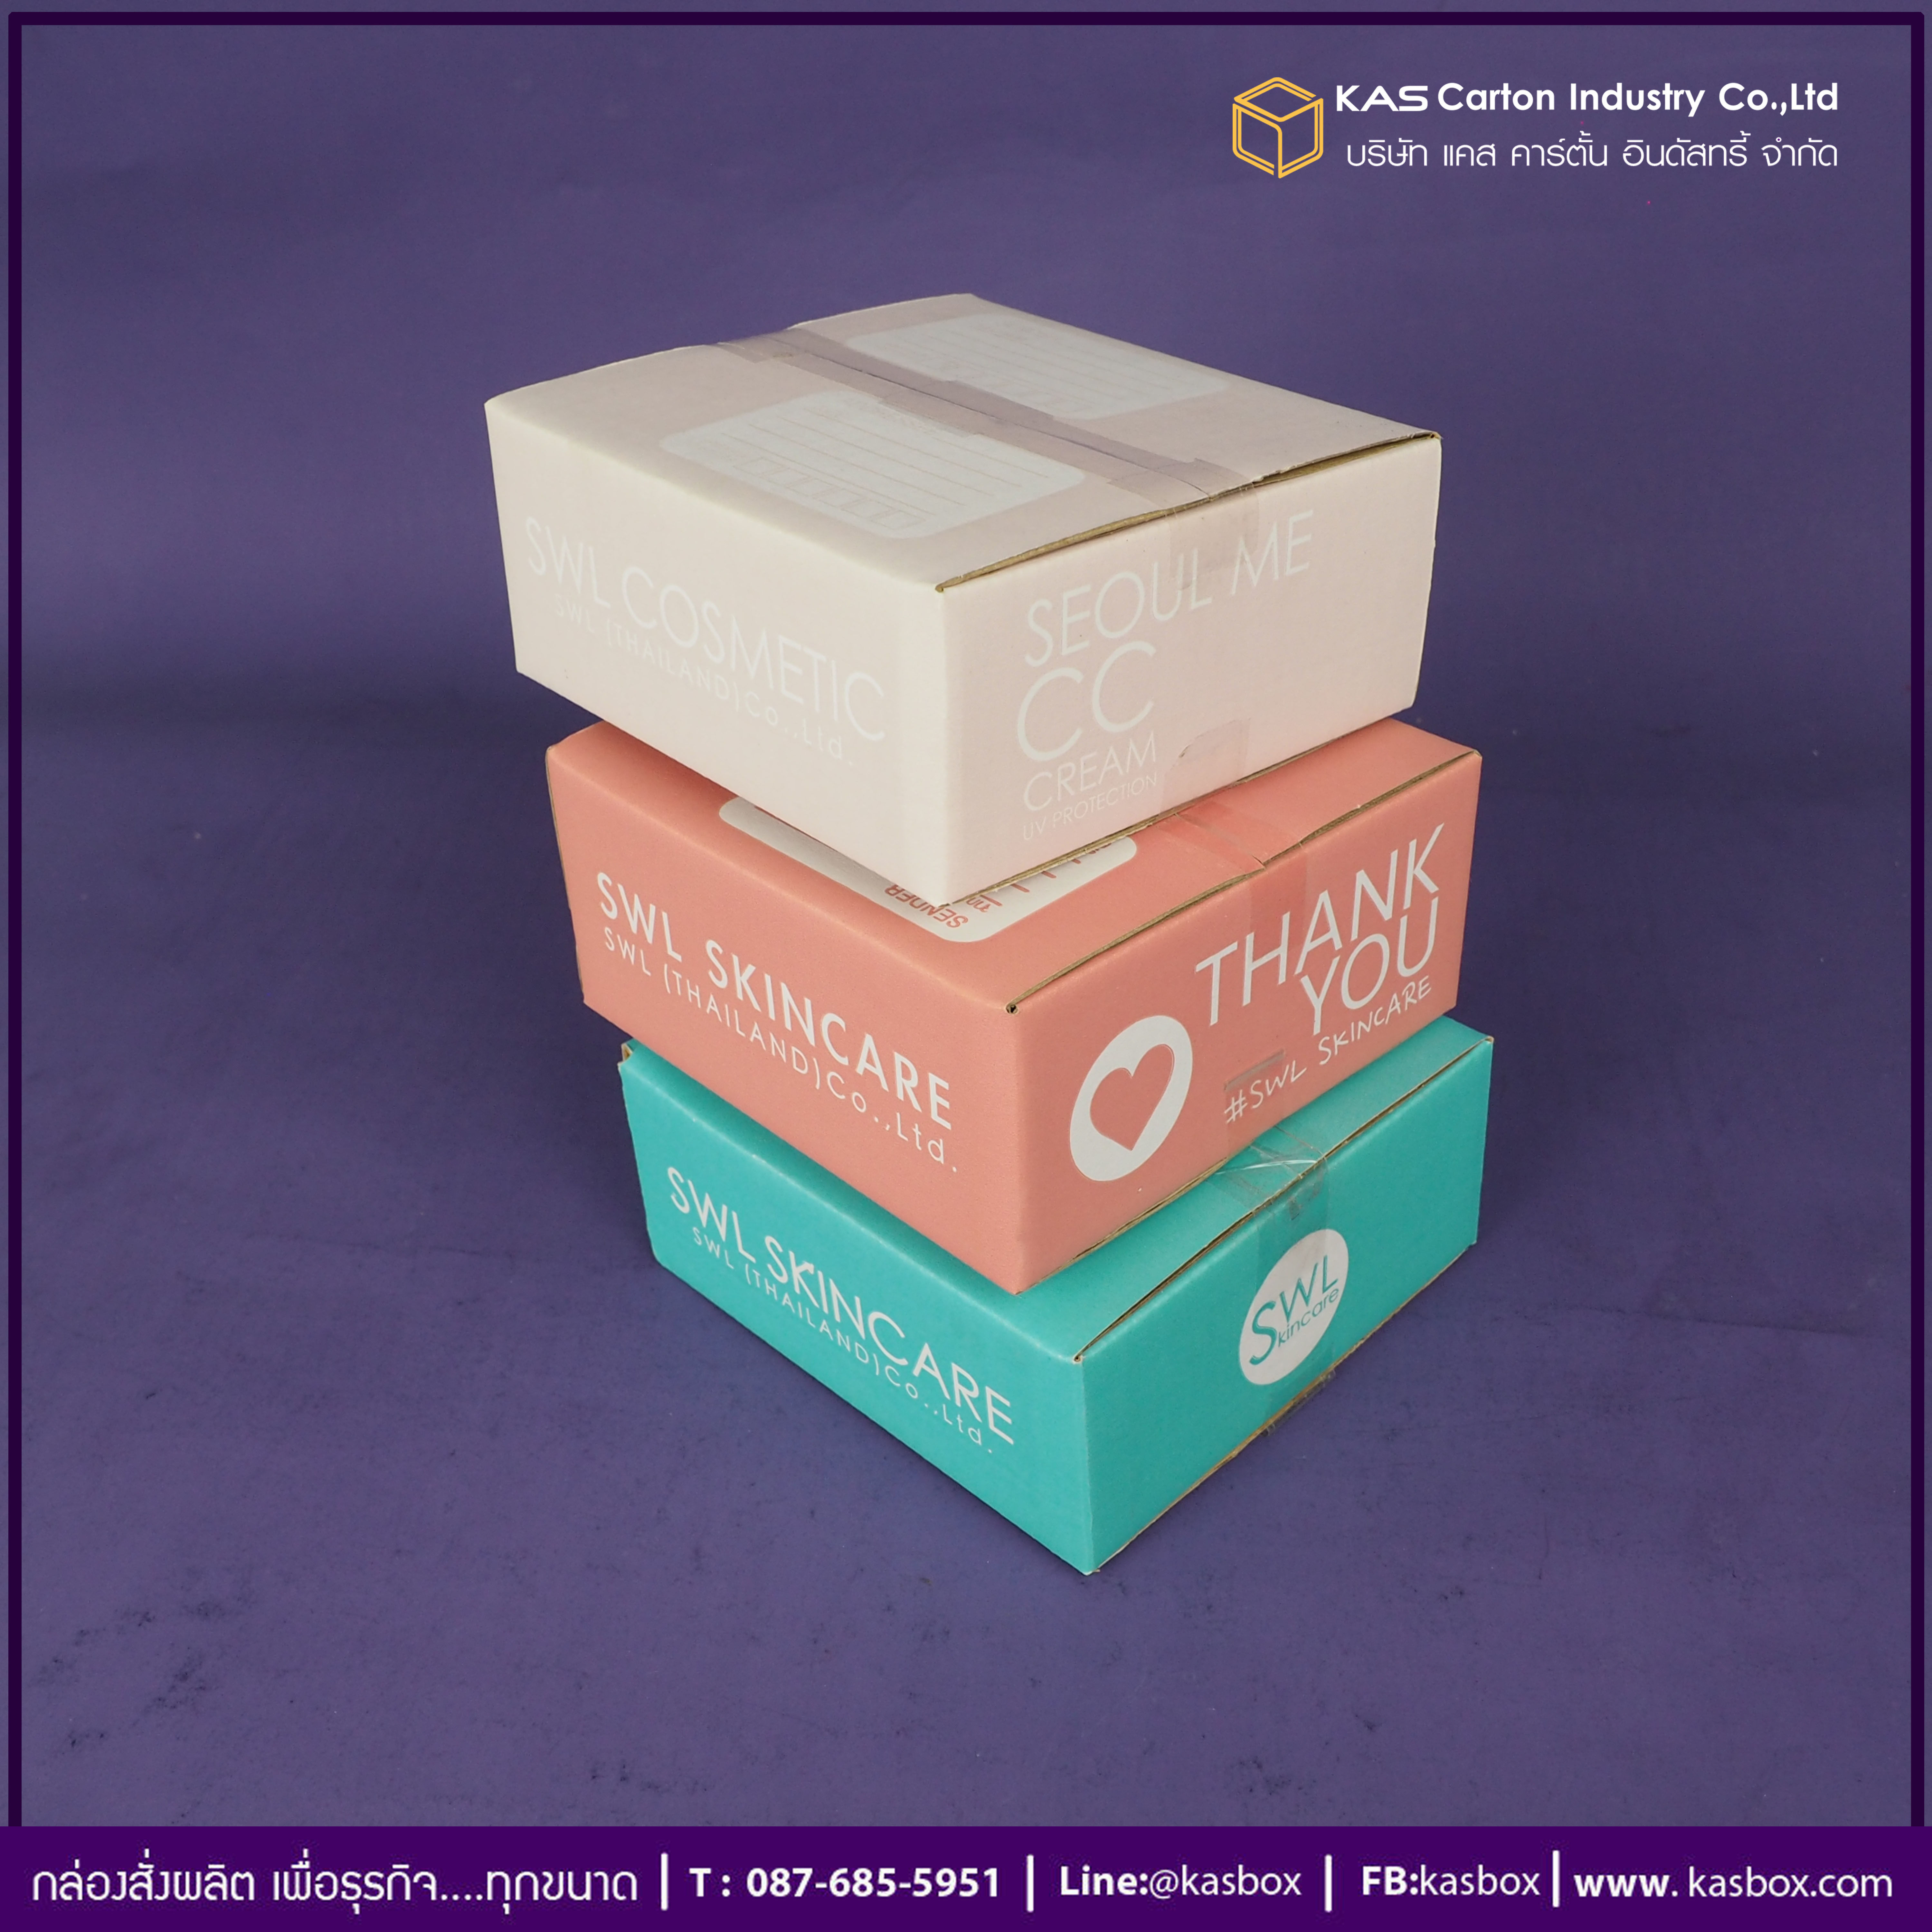 กล่องลูกฟูก สำเร็จรูป และ สั่งผลิต ตามความต้องการลูกค้า กล่องกระดาษลูกฟูก กล่อง E-Commerce